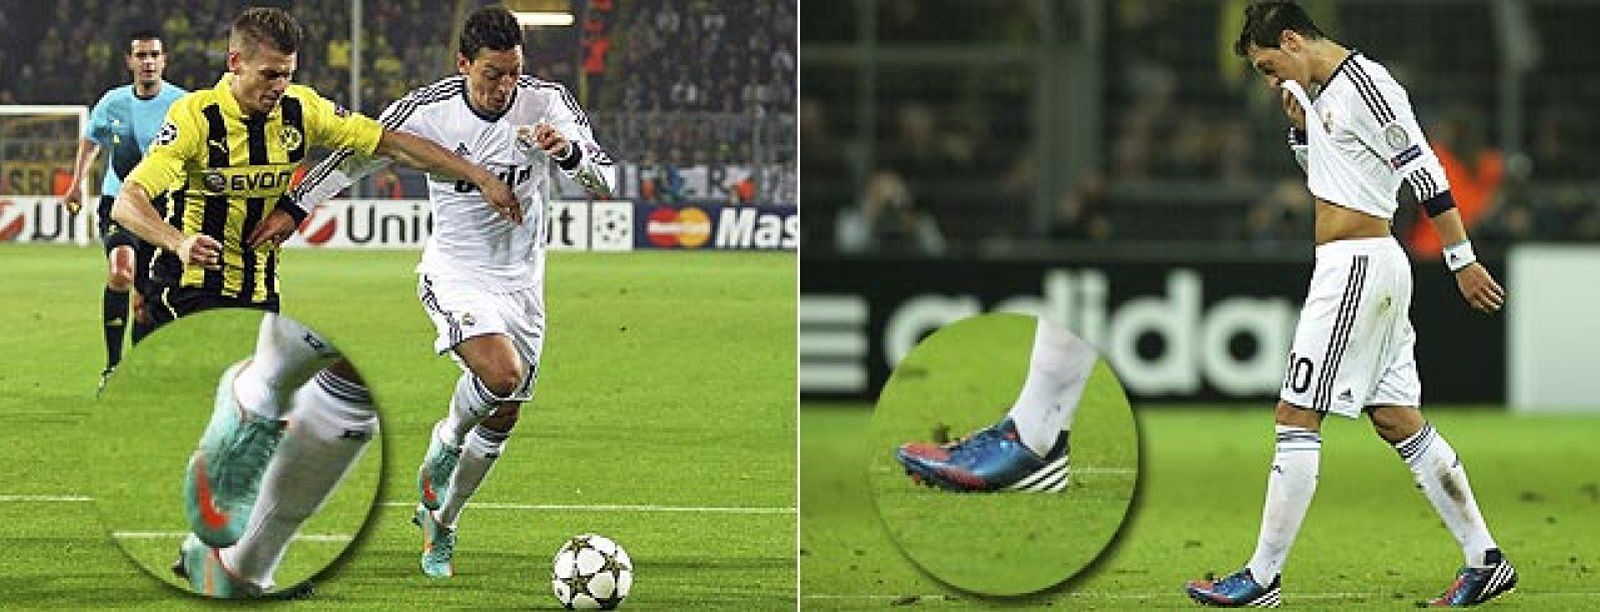 Foto: Özil 'media' entre Nike y Adidas: jugó cada parte ante el Borussia con una marca distinta